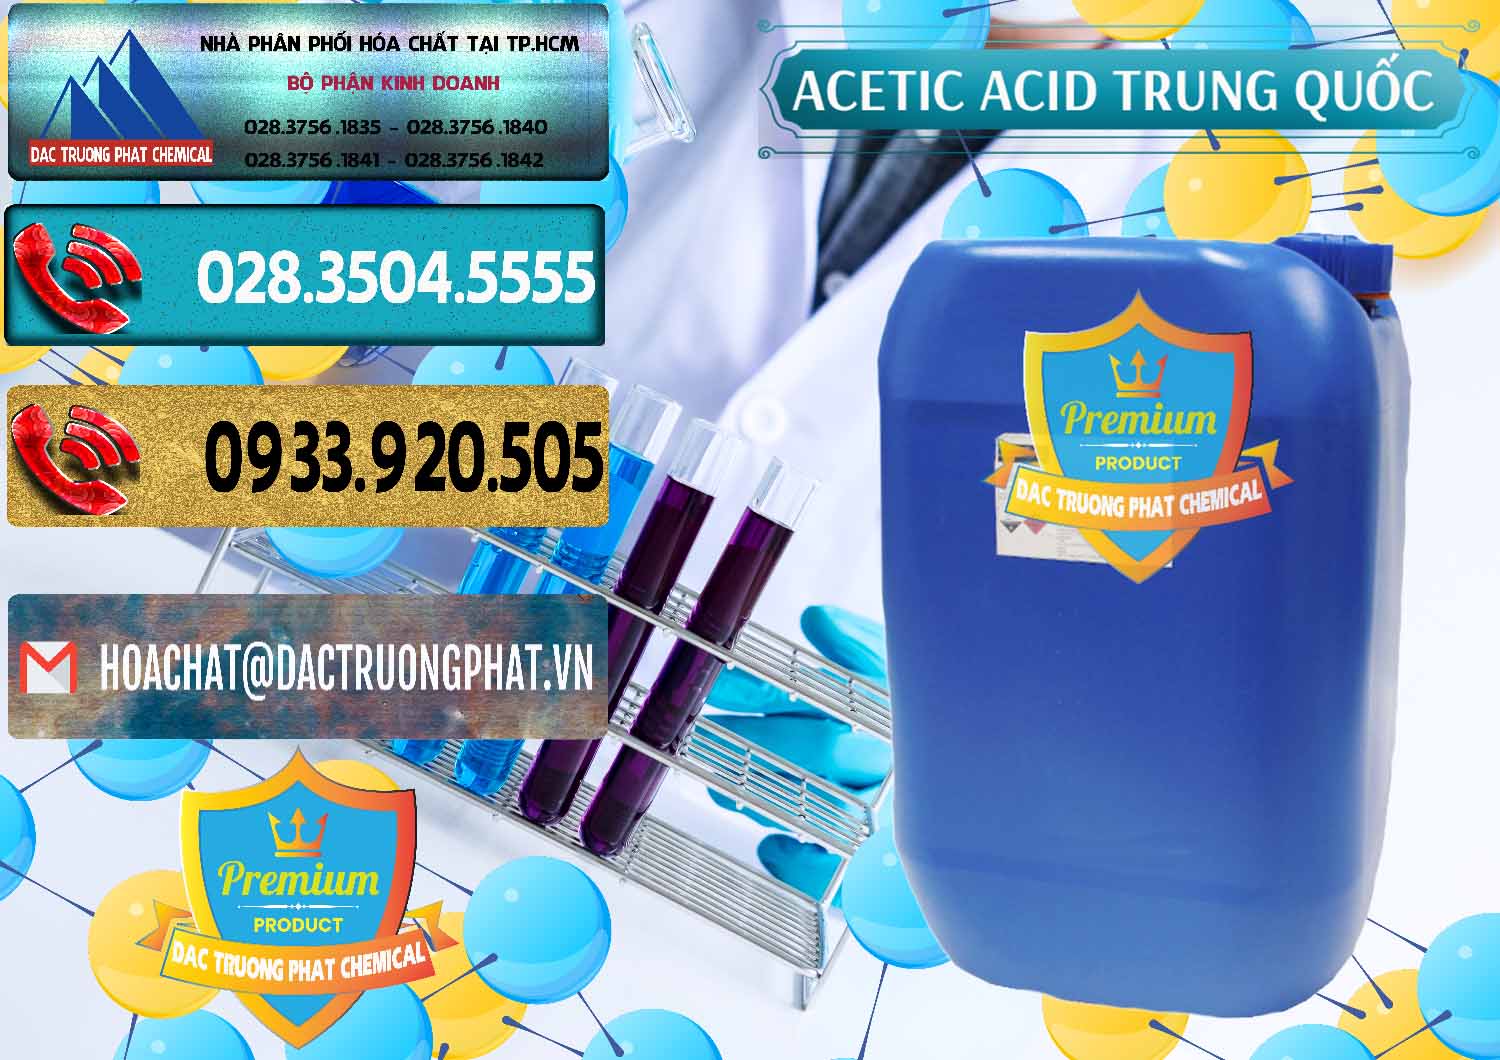 Đơn vị nhập khẩu _ bán Acetic Acid – Axit Acetic Trung Quốc China - 0358 - Bán và phân phối hóa chất tại TP.HCM - hoachatdetnhuom.com